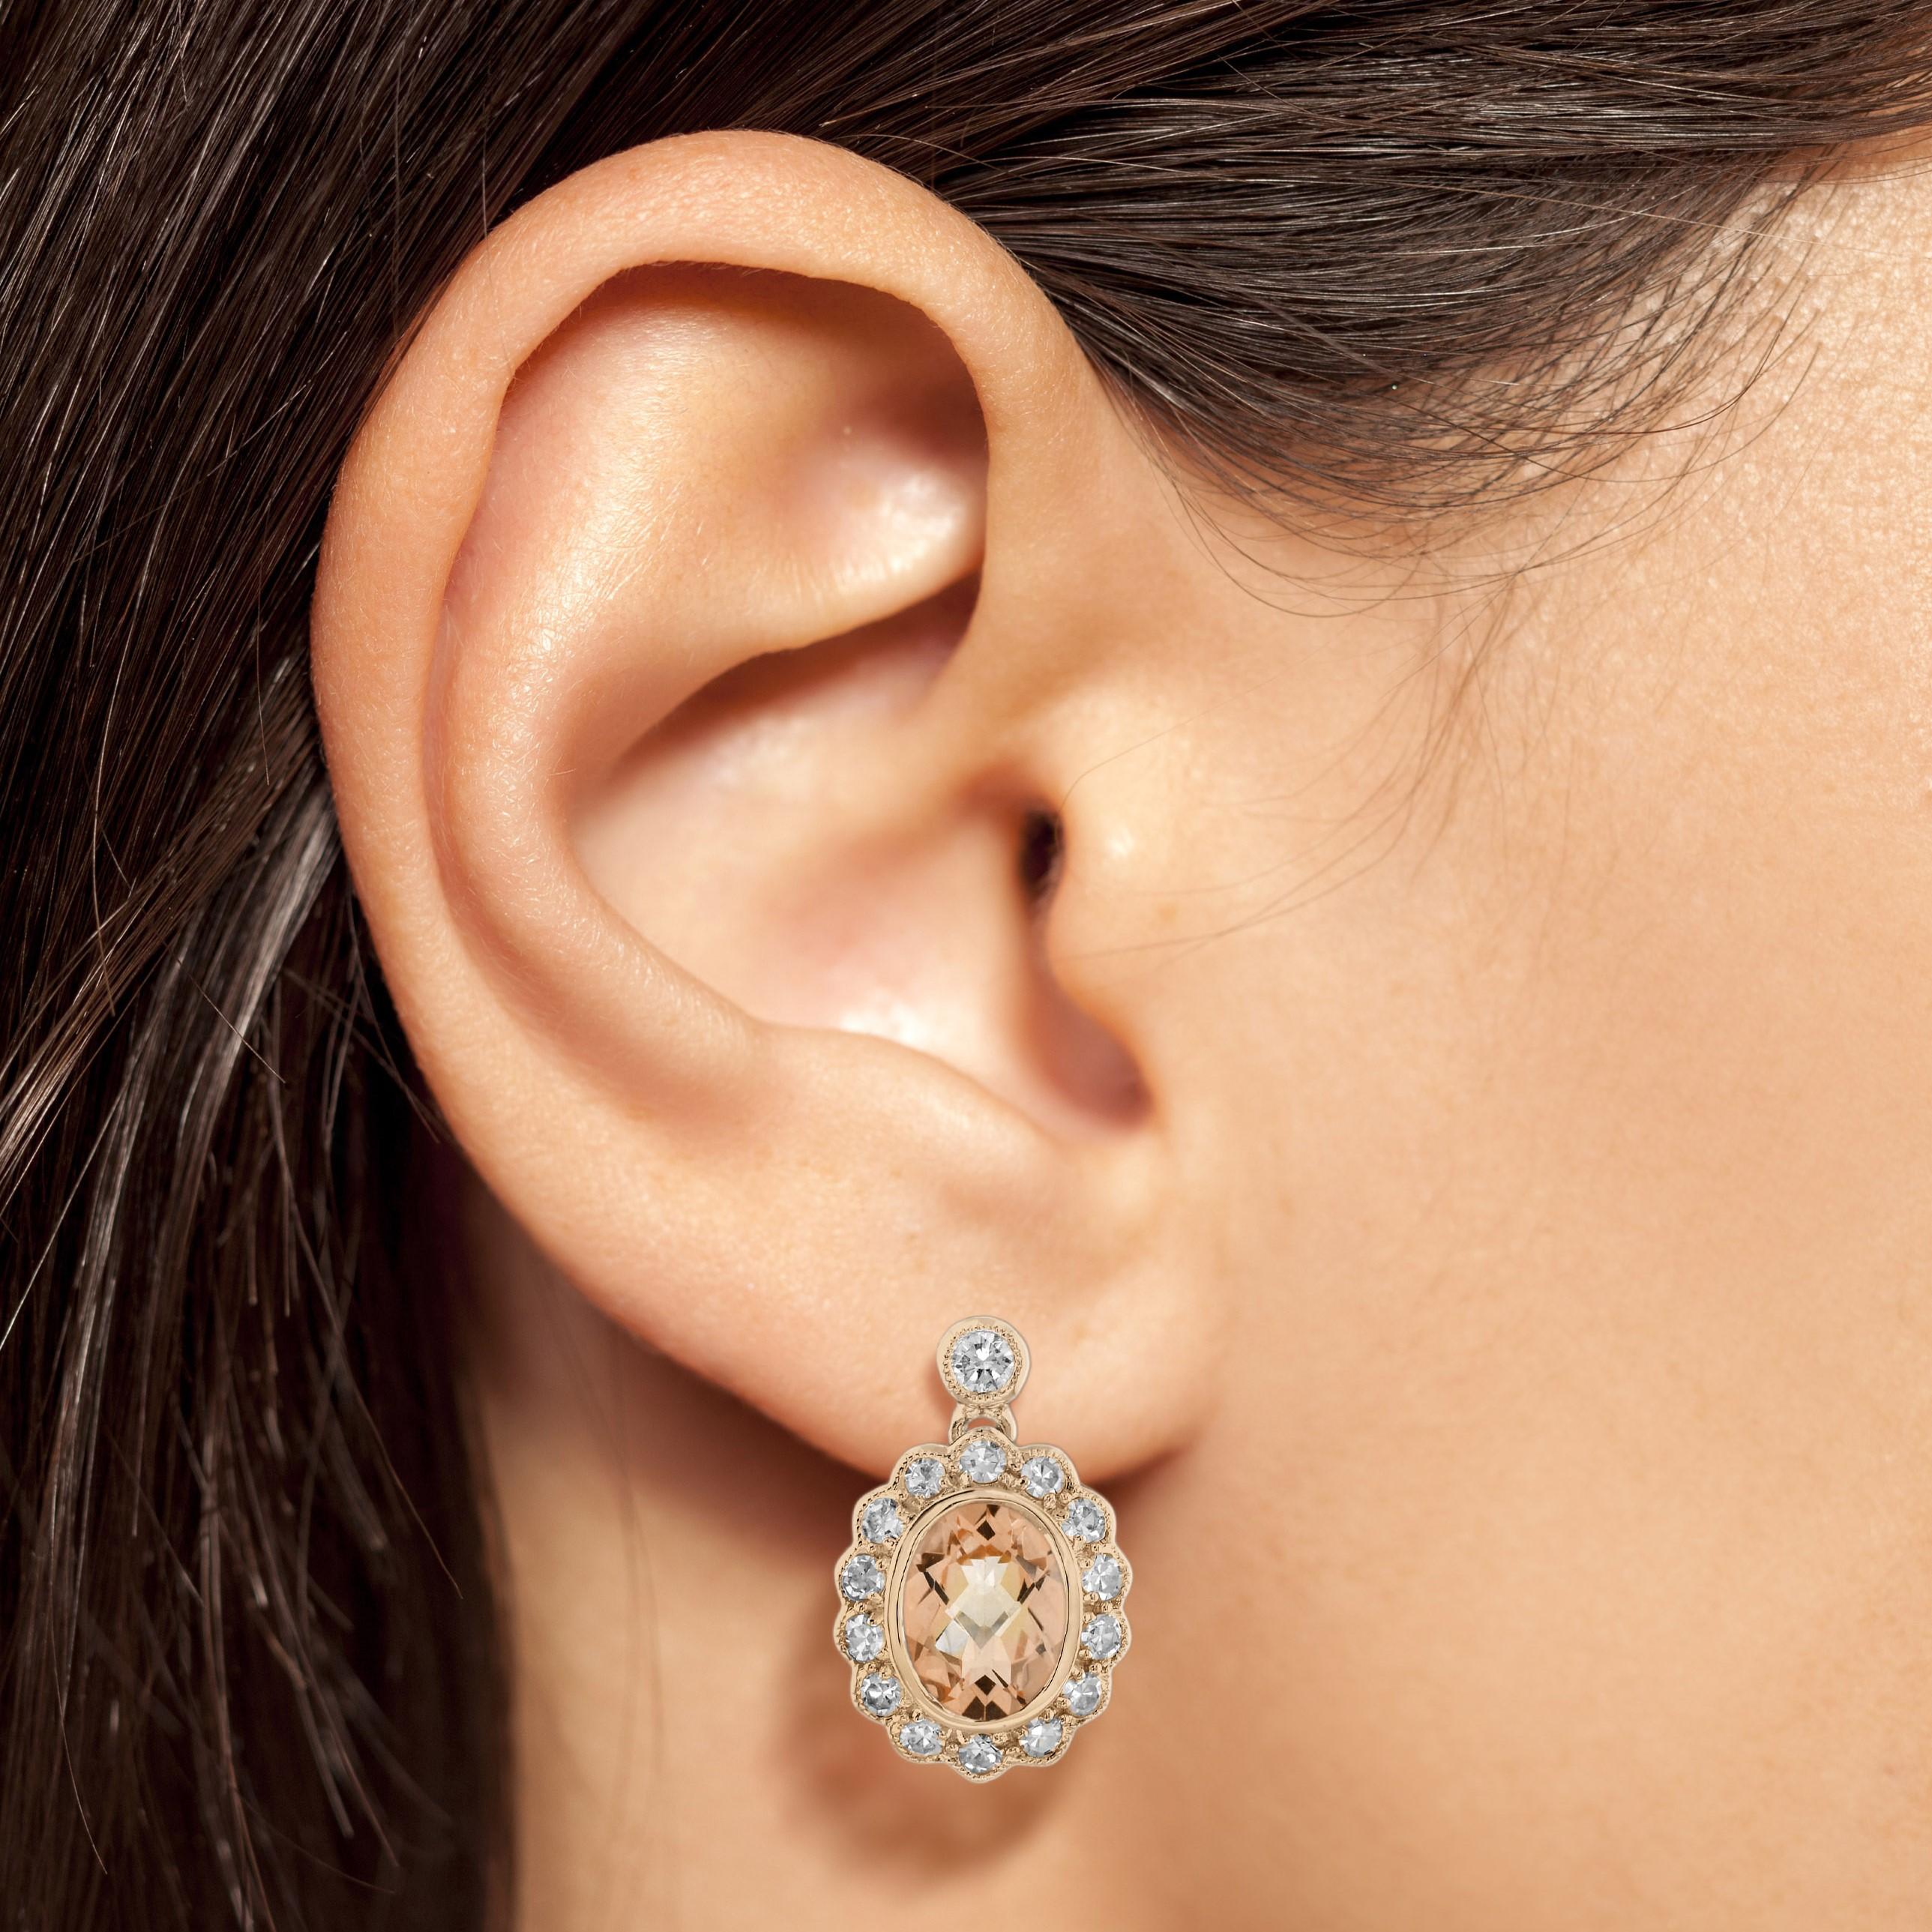 Ein exquisites Paar Ohrringe aus Roségold. Mit ihrem femininen pfirsichfarbenen Morganit und einem Diamantbesatz von insgesamt ca. 0,68 Karat verleihen sie jedem Outfit einen Hauch von Vintage-Glamour und sind eine ausgezeichnete Wahl für Geschenke.